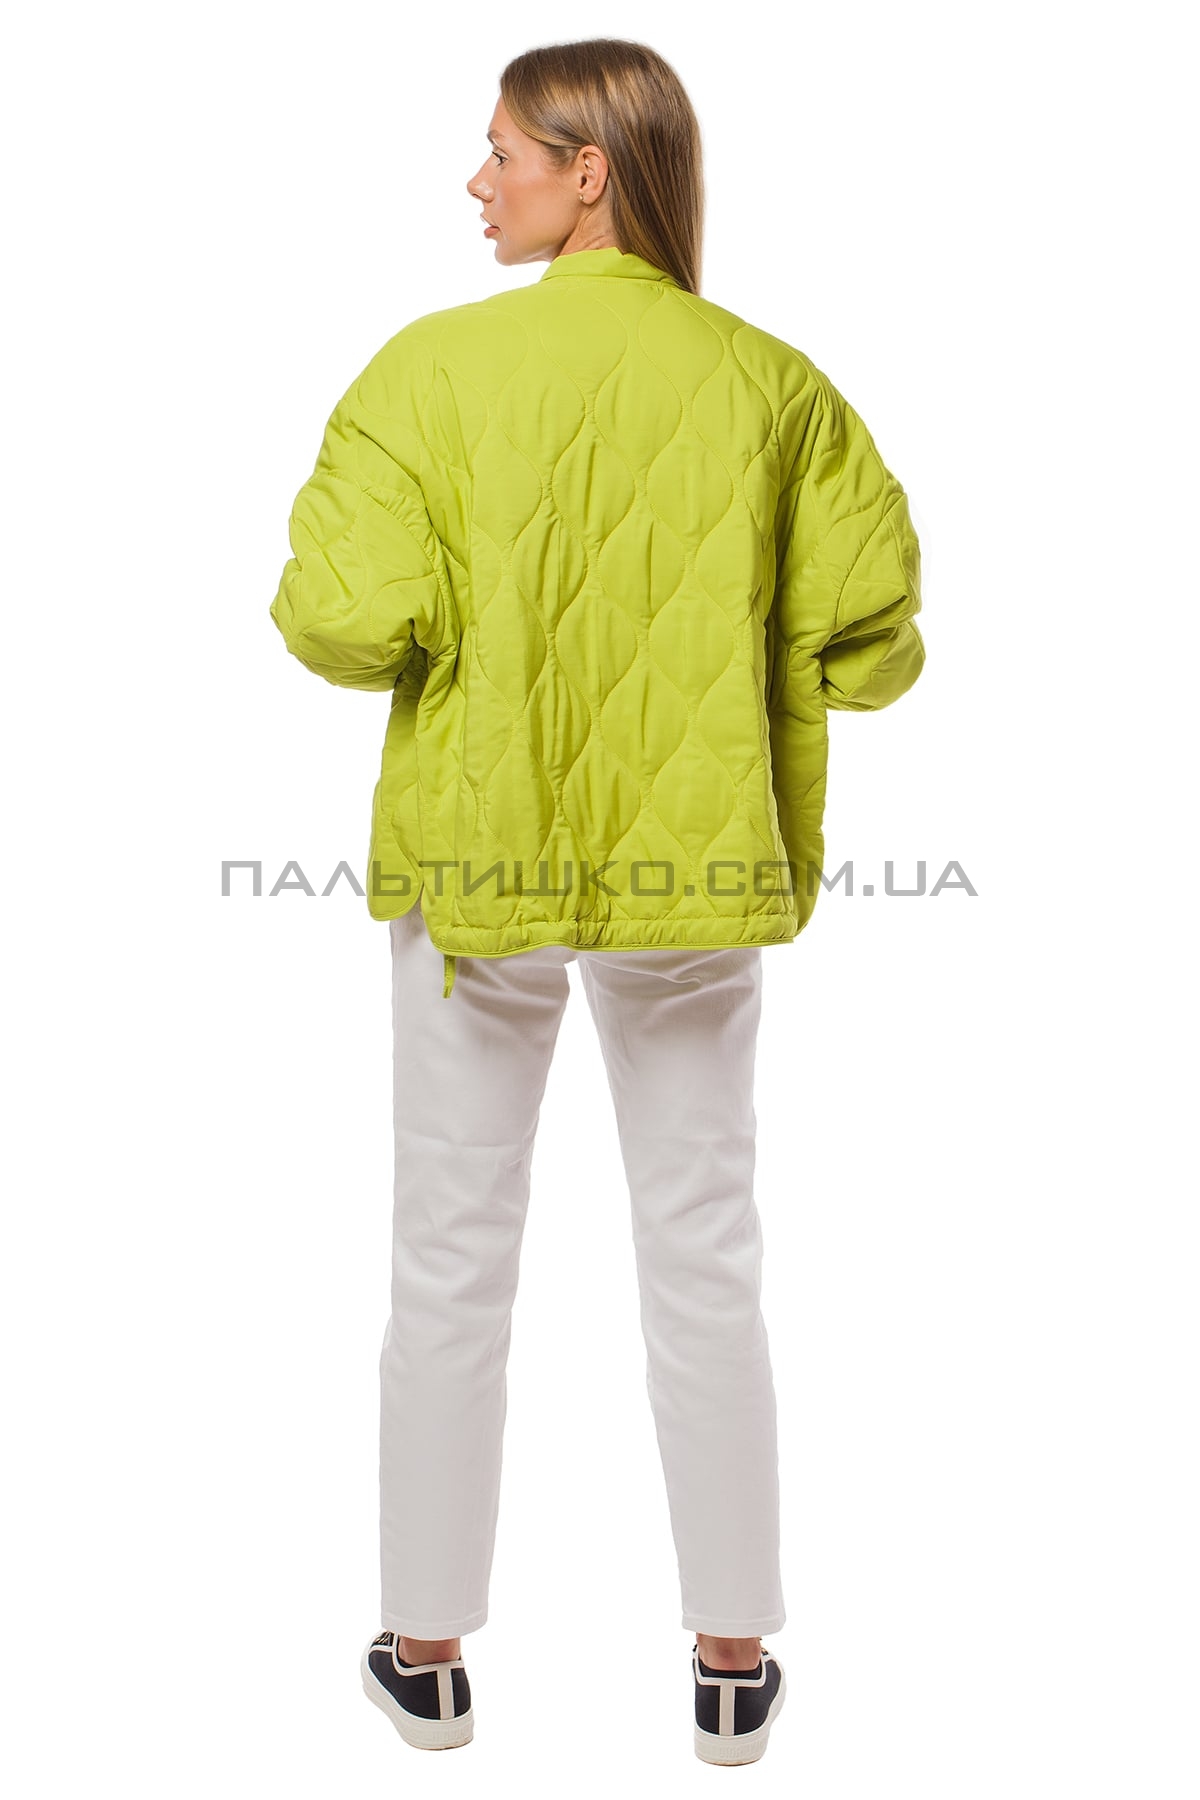  Женкская короткая куртка лимонная